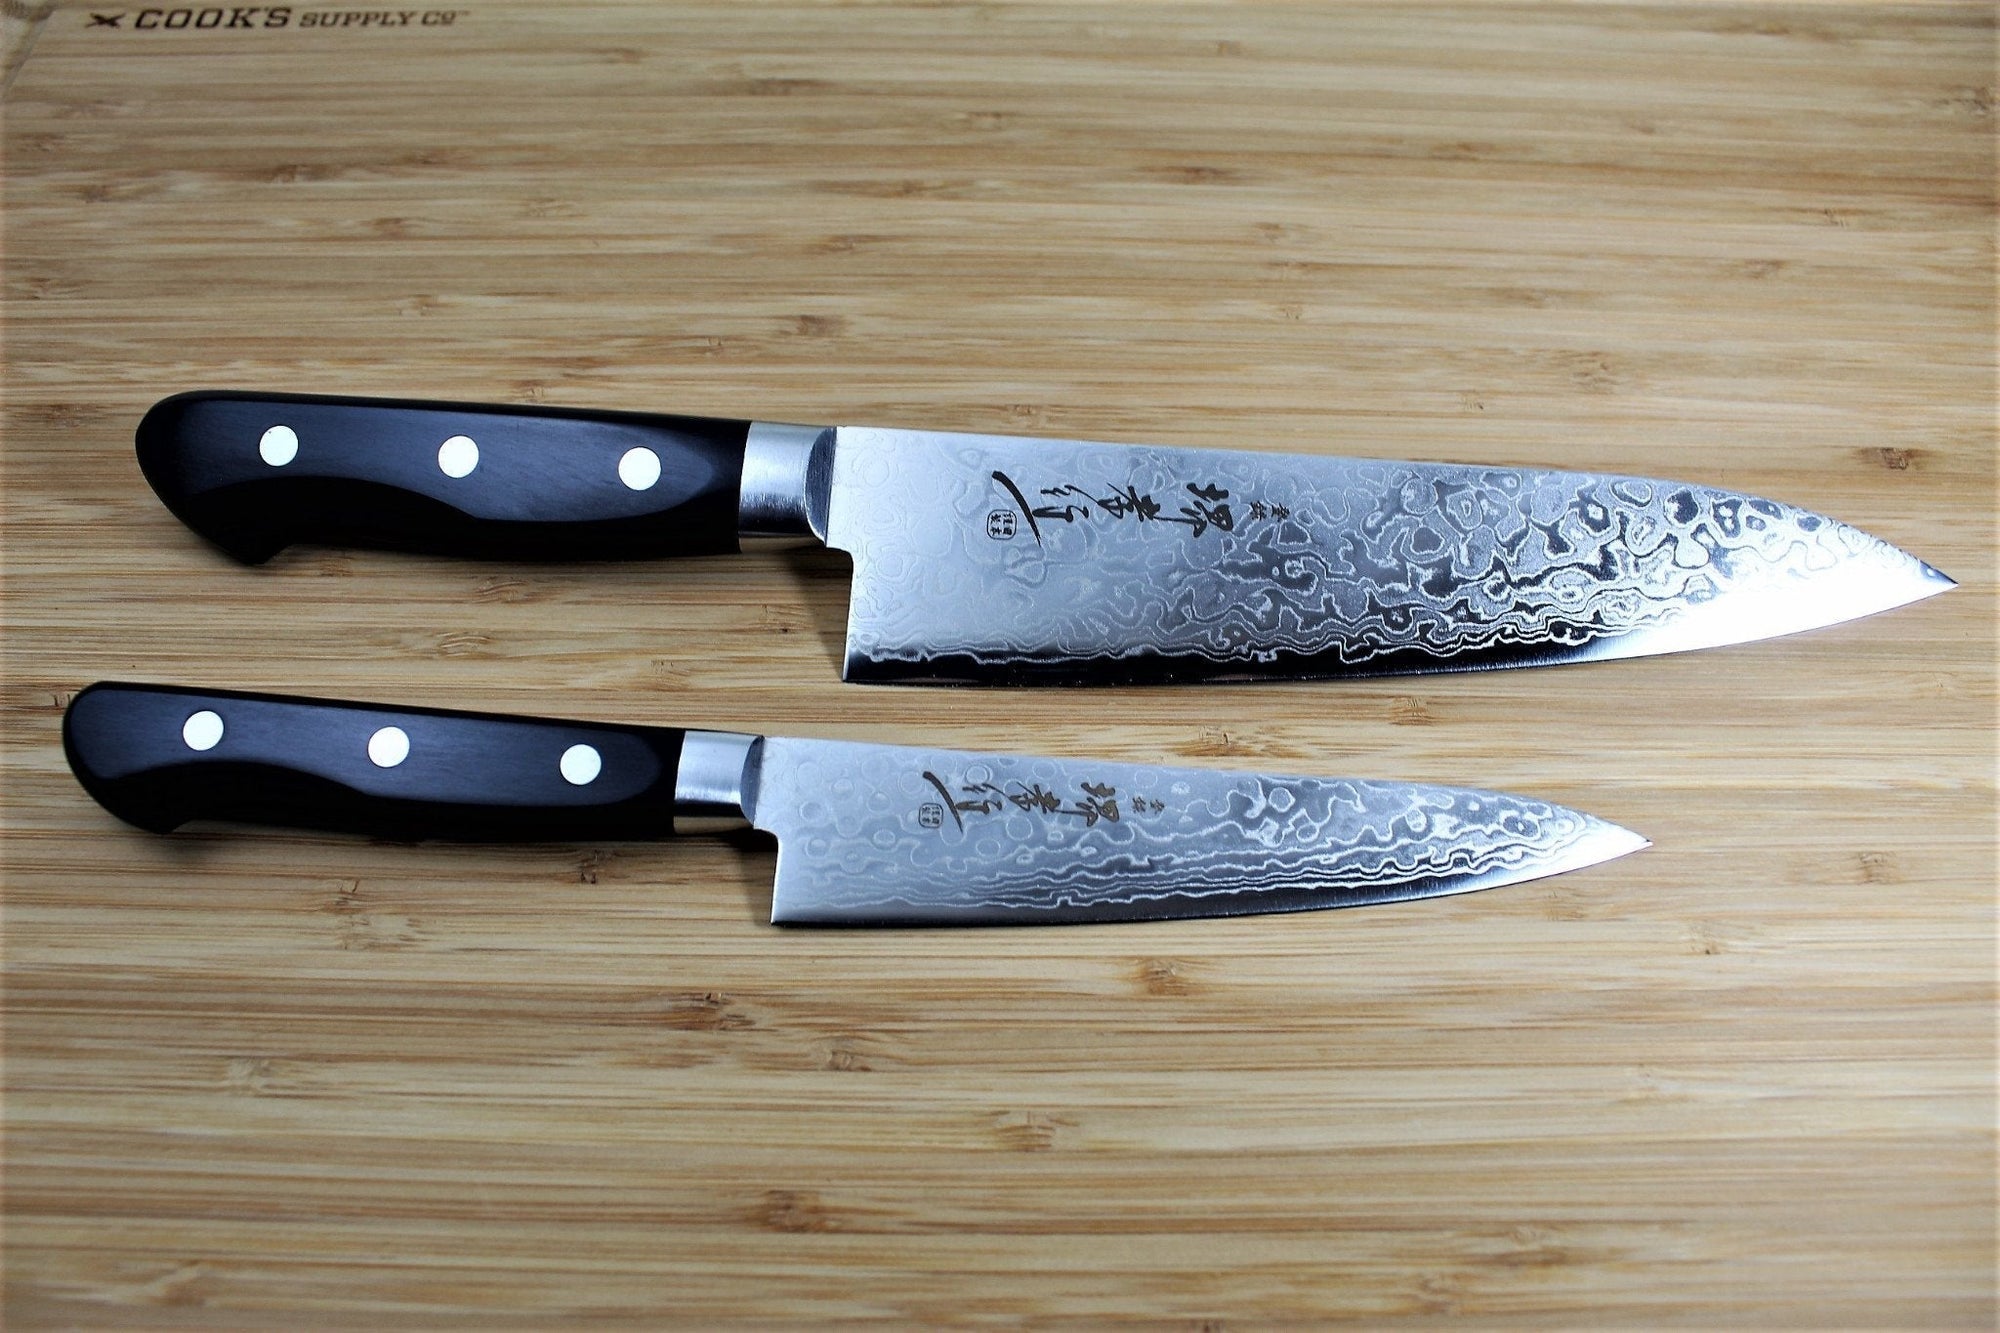  FULLHI 12pcs Japanese Gyuto Chef Knife set